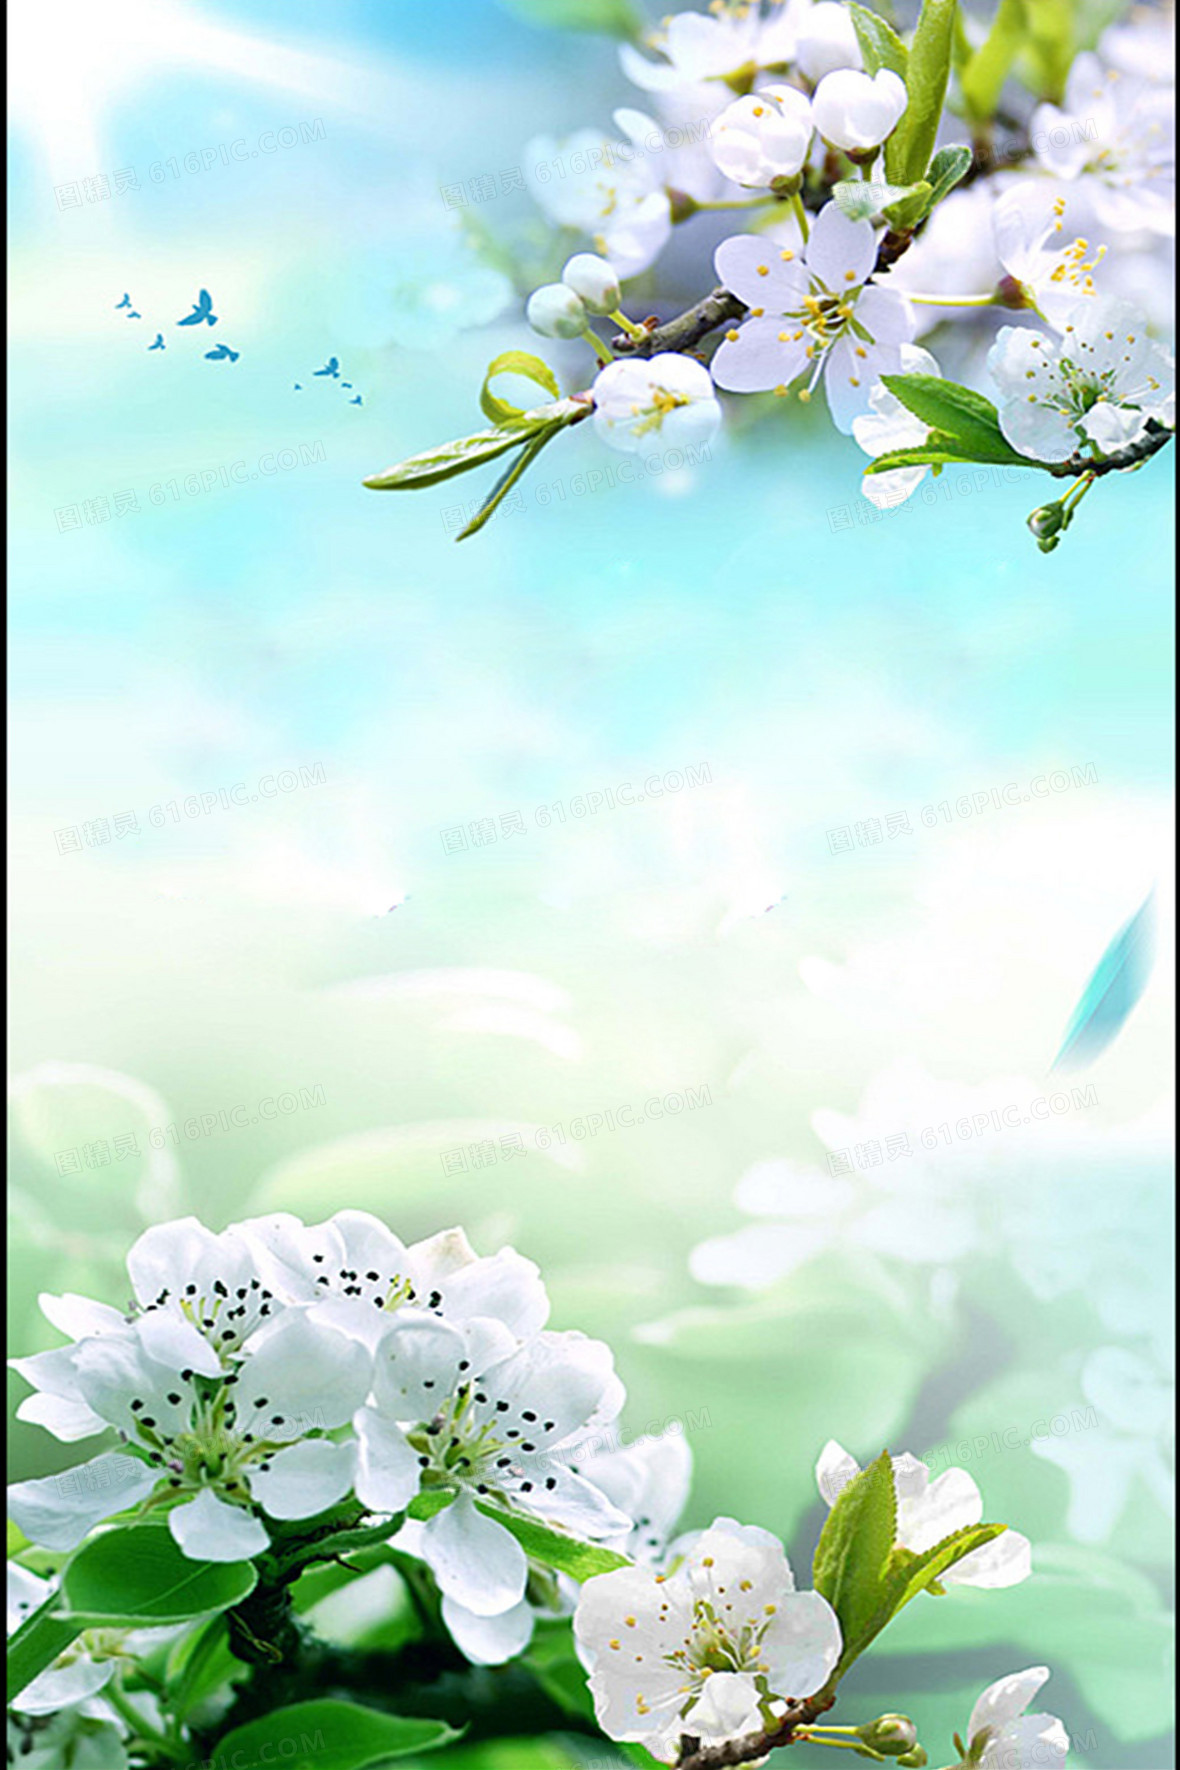 唯美白花背景背景图片下载_800x800像素jpg格式_图精灵